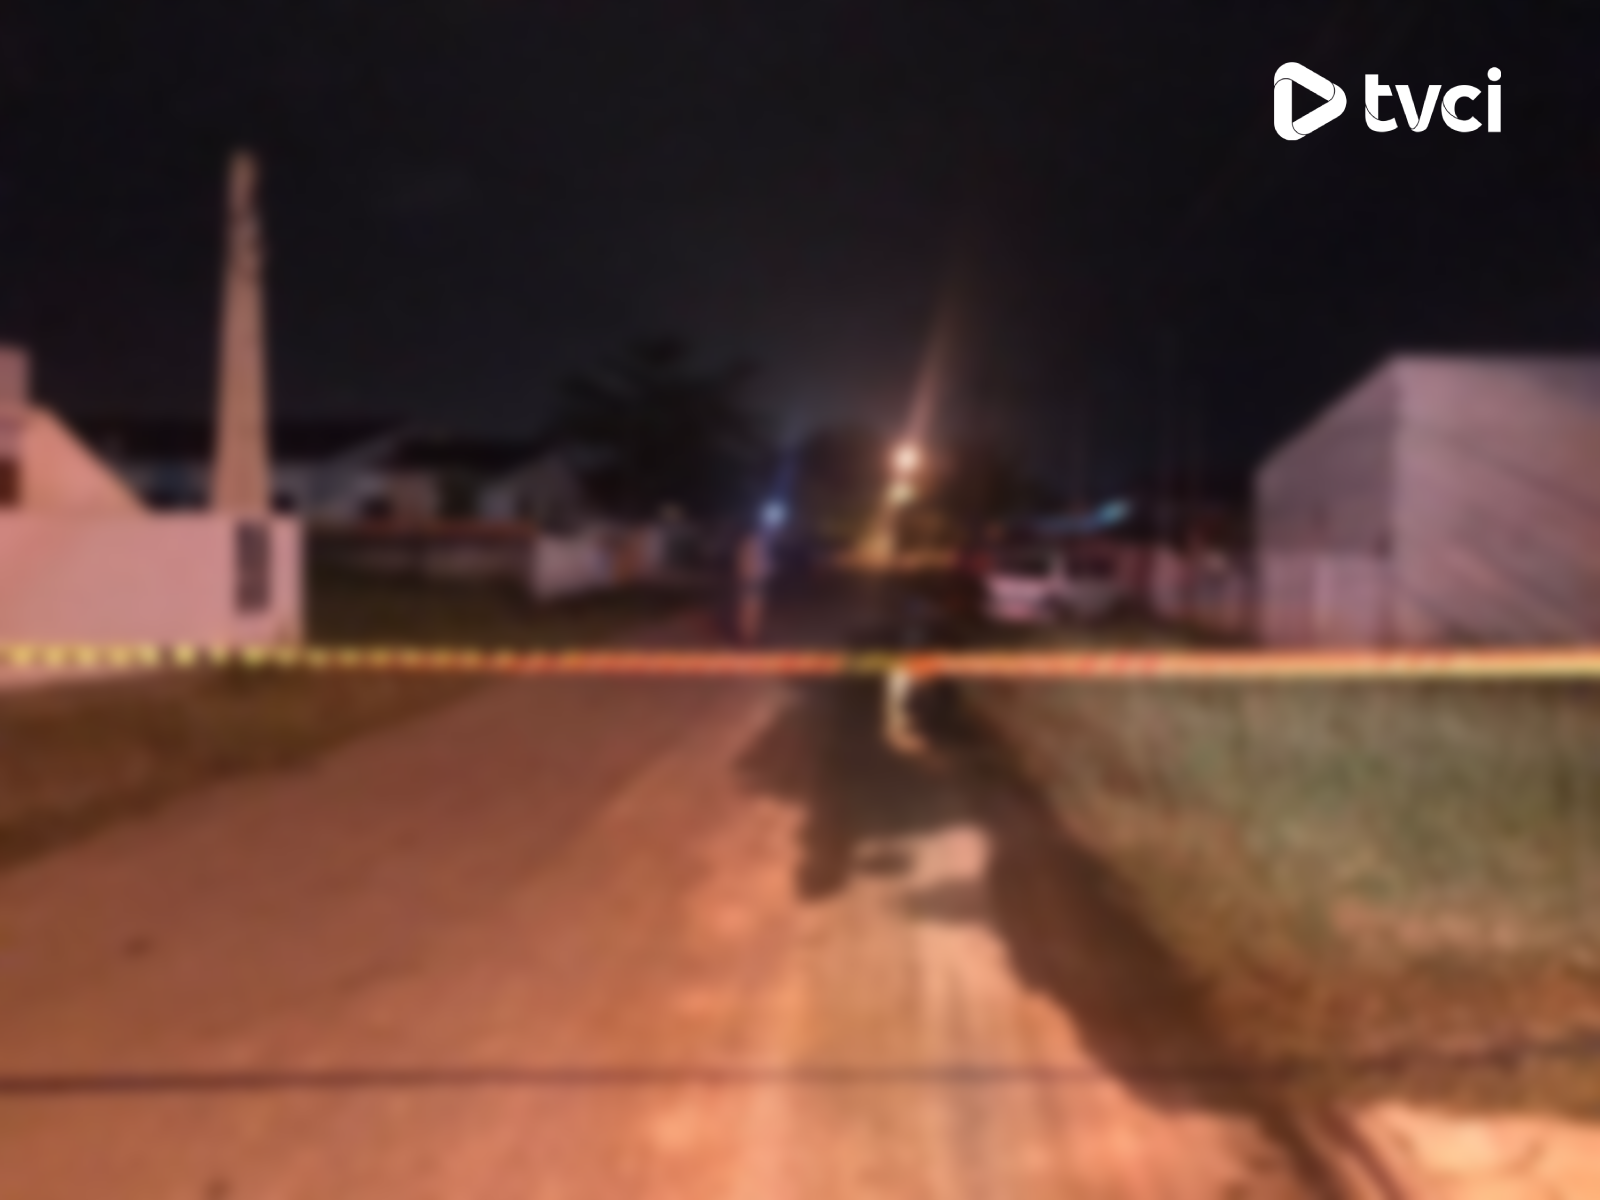 e4dea03a-486d-4d7f-956e-f0fe4f0cfab8 Jovem é morto a tiros, em Pontal do Paraná